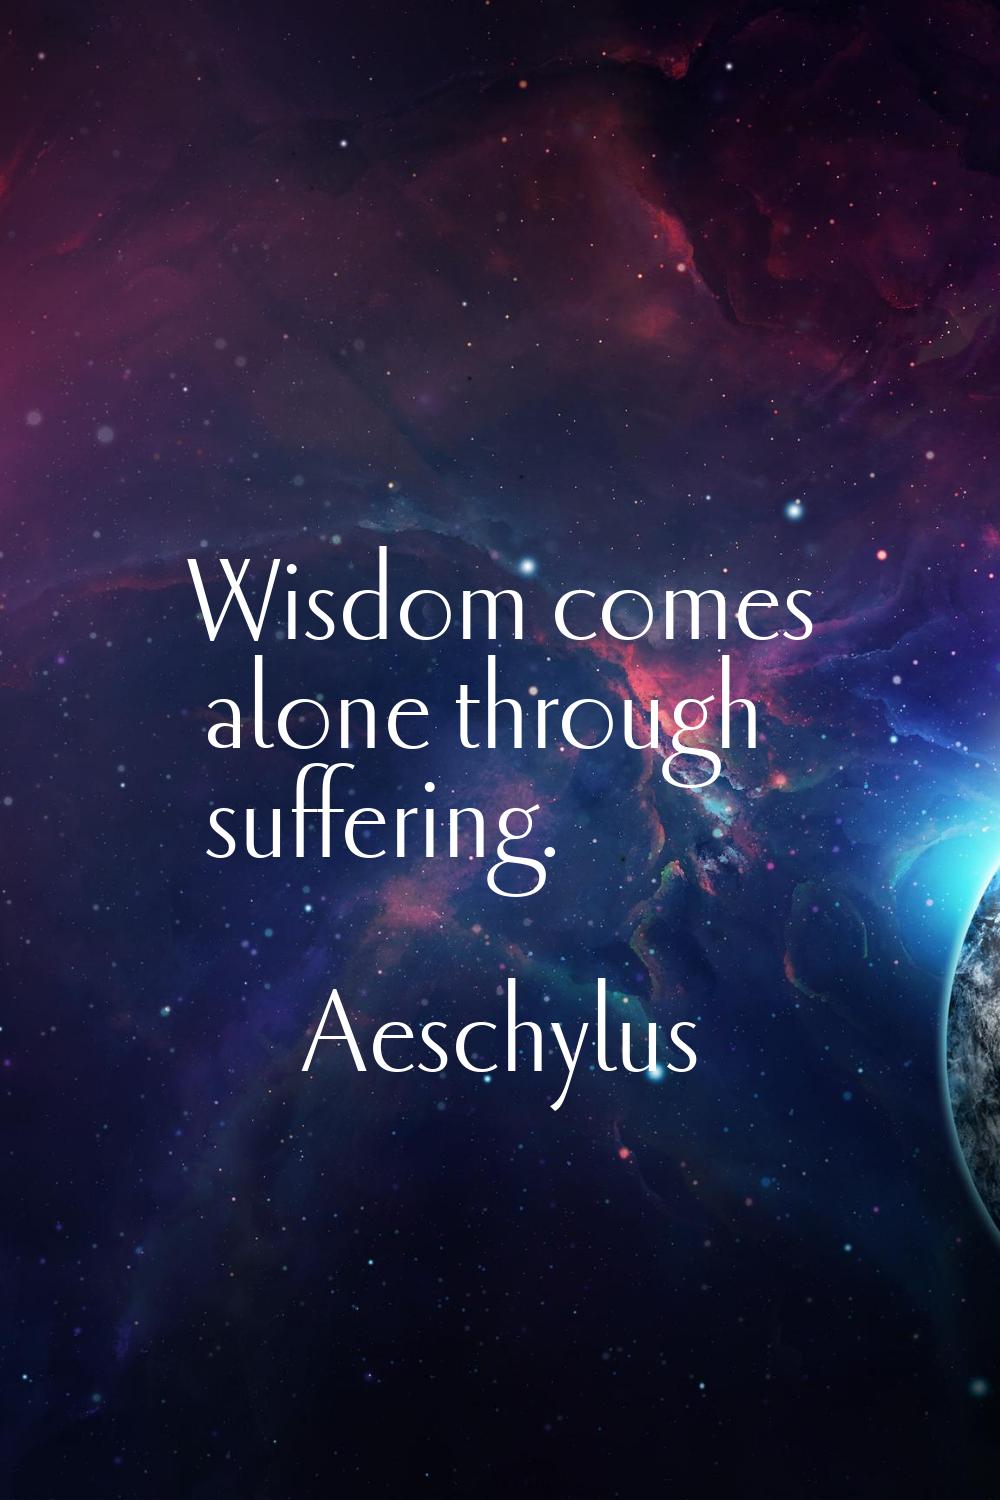 Wisdom comes alone through suffering.